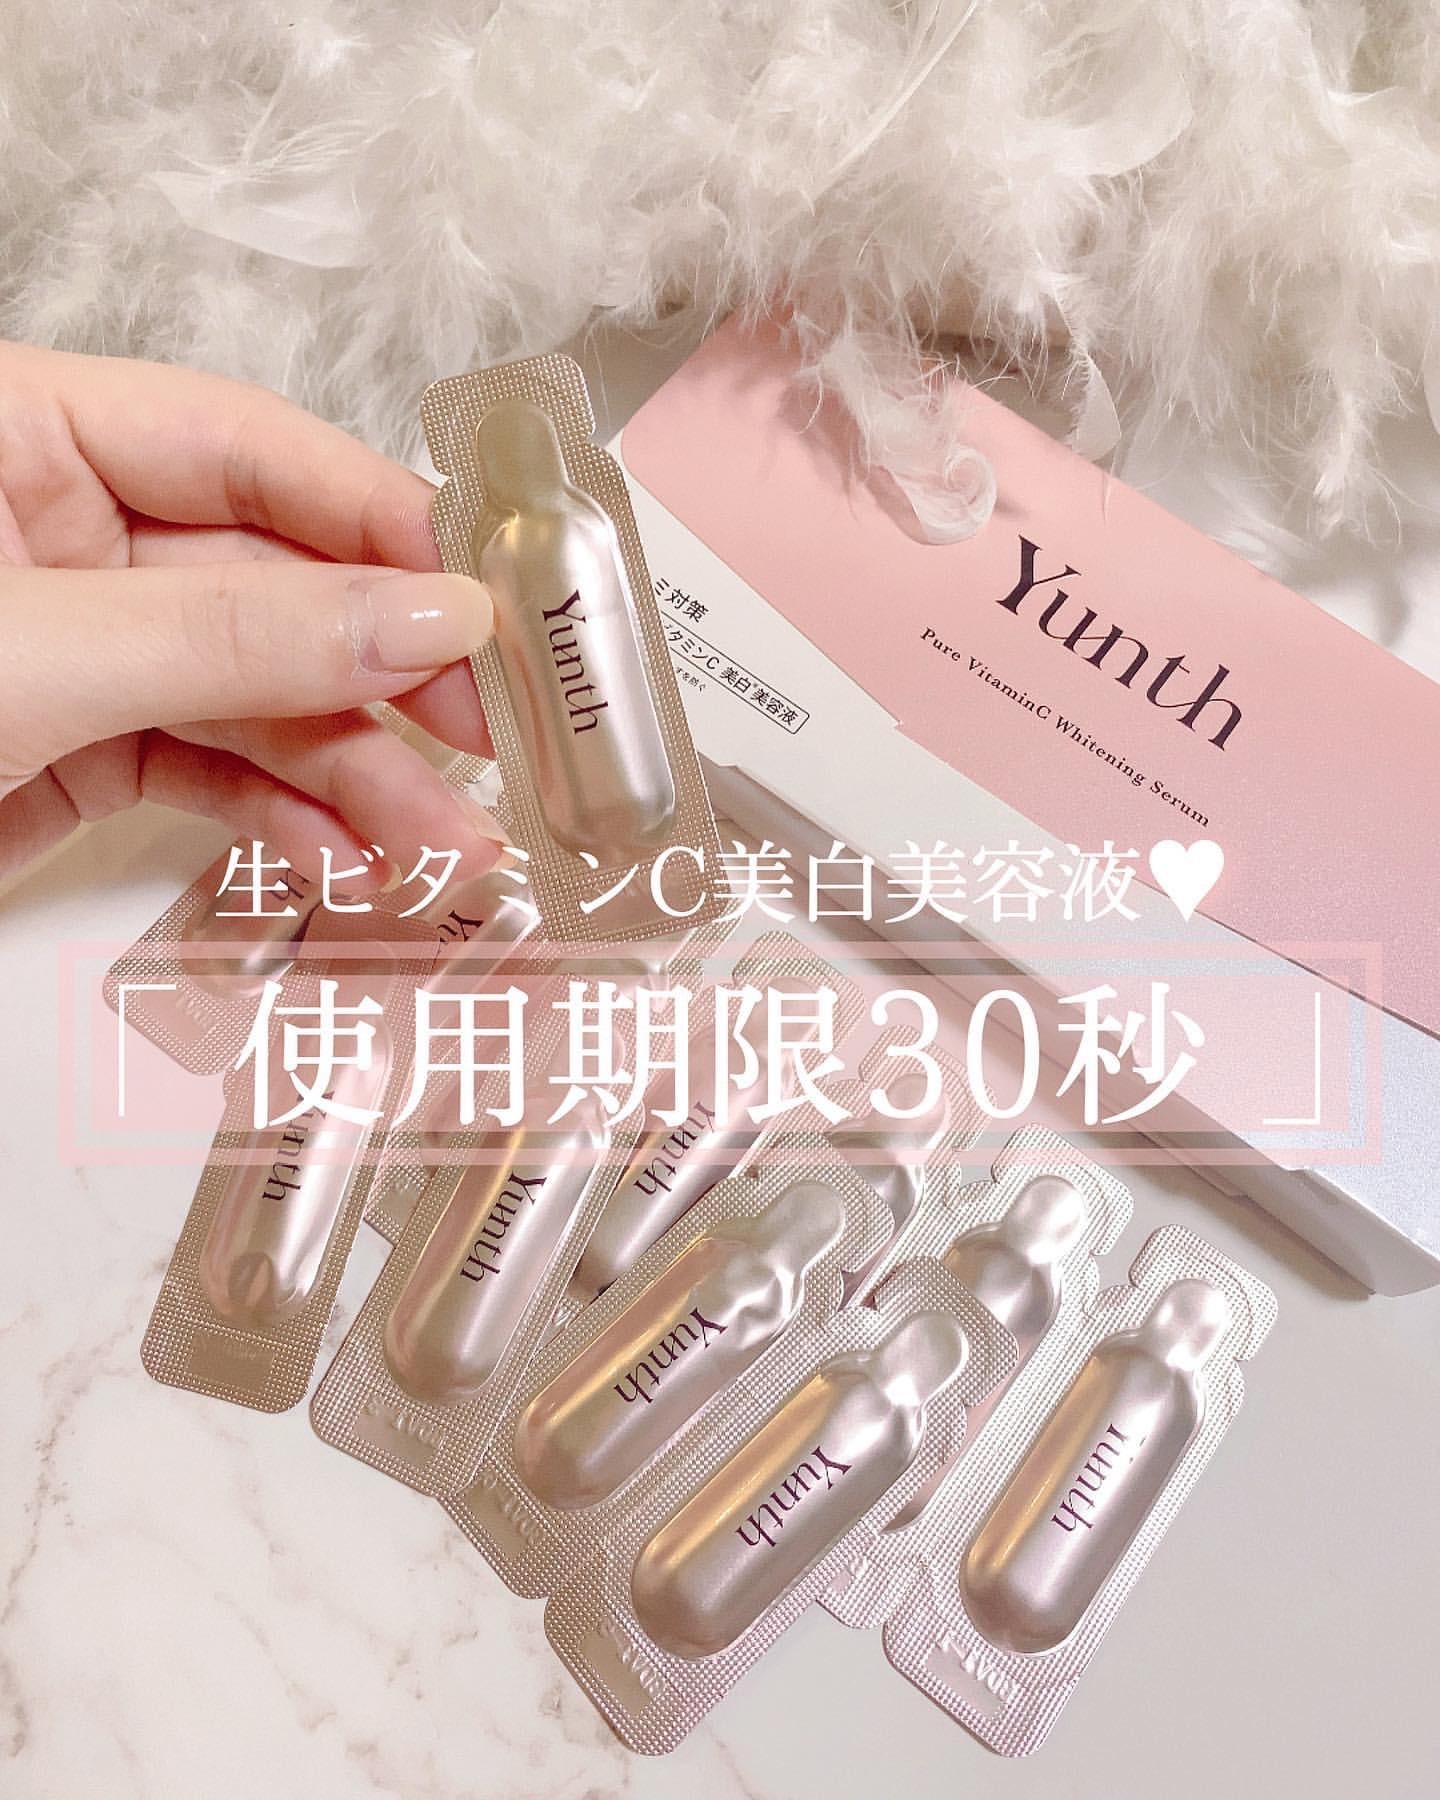 日本Yunth 100%高純度生維他命C美白導入美容液